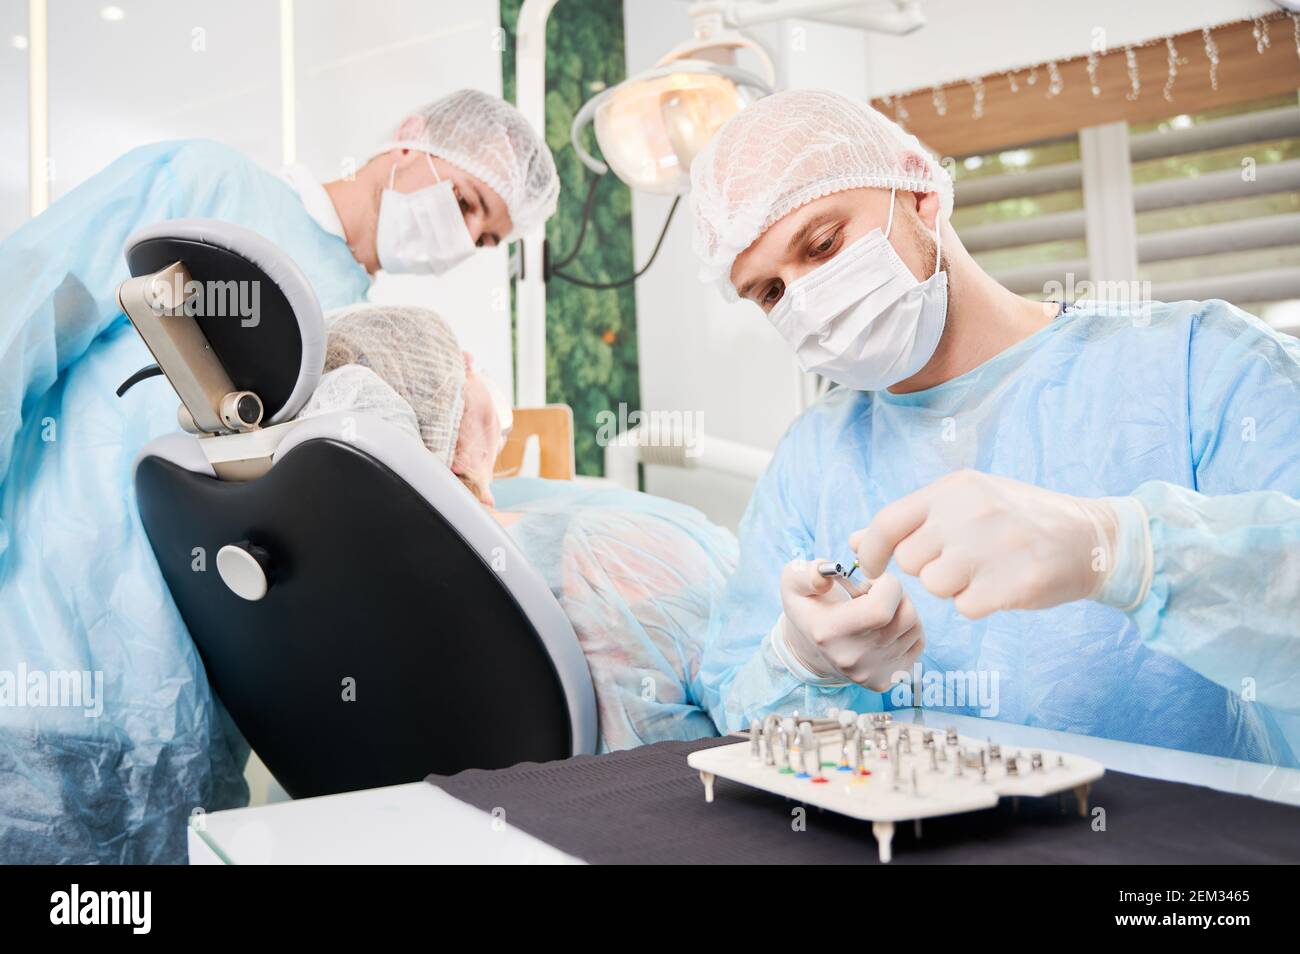 Zahnarzt im Vordergrund, trägt sterile Einweg-Kleidung, setzen chirurgische  Düse auf Bohrer vor Implantat-Installation. Patient und Assistent auf  unscharfem Hintergrund. Konzept der Implantatplatzierung Stockfotografie -  Alamy